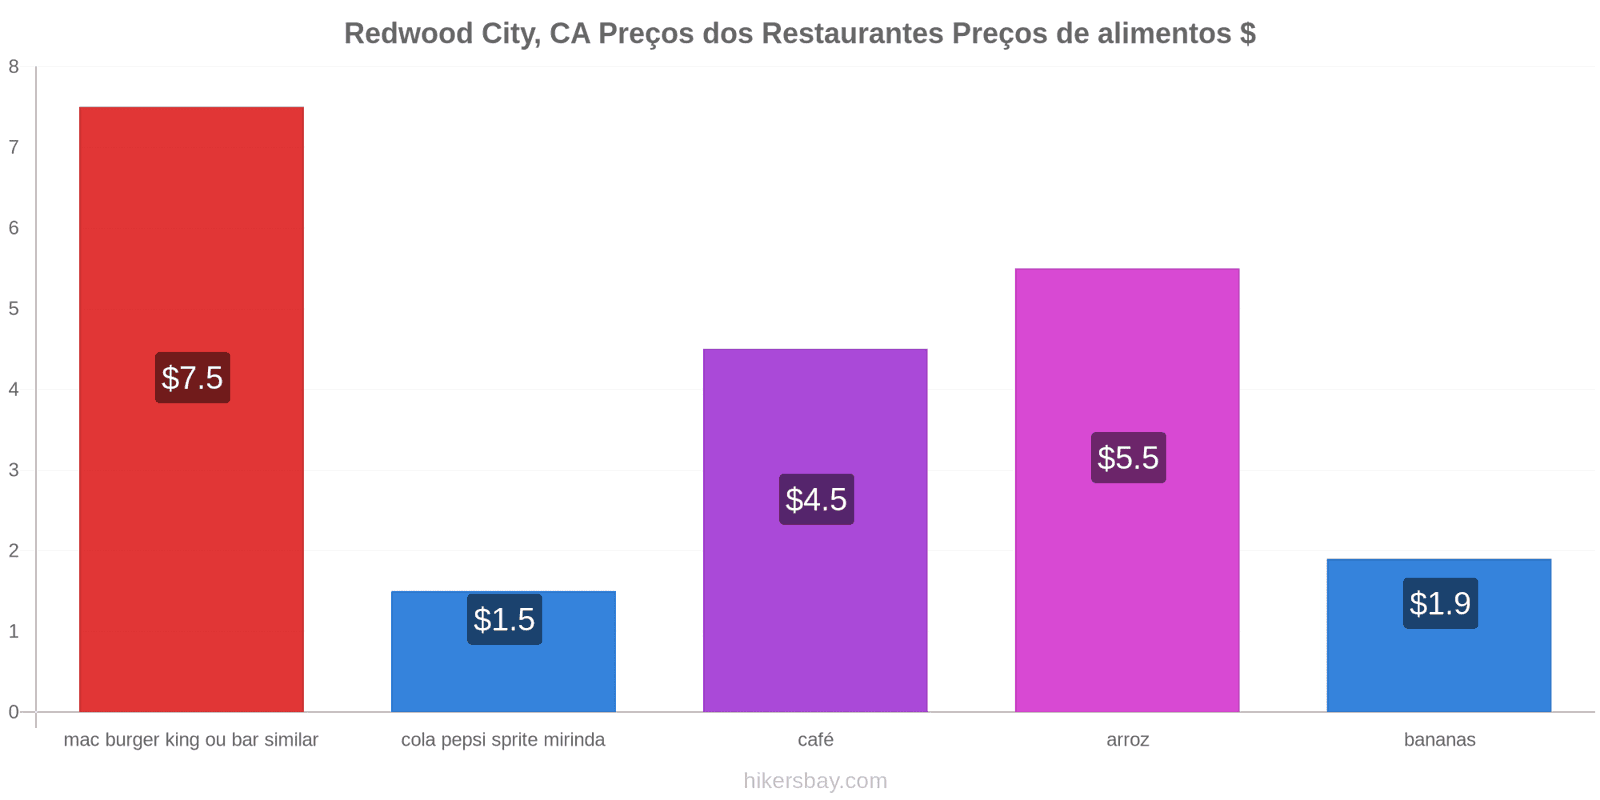 Redwood City, CA mudanças de preços hikersbay.com